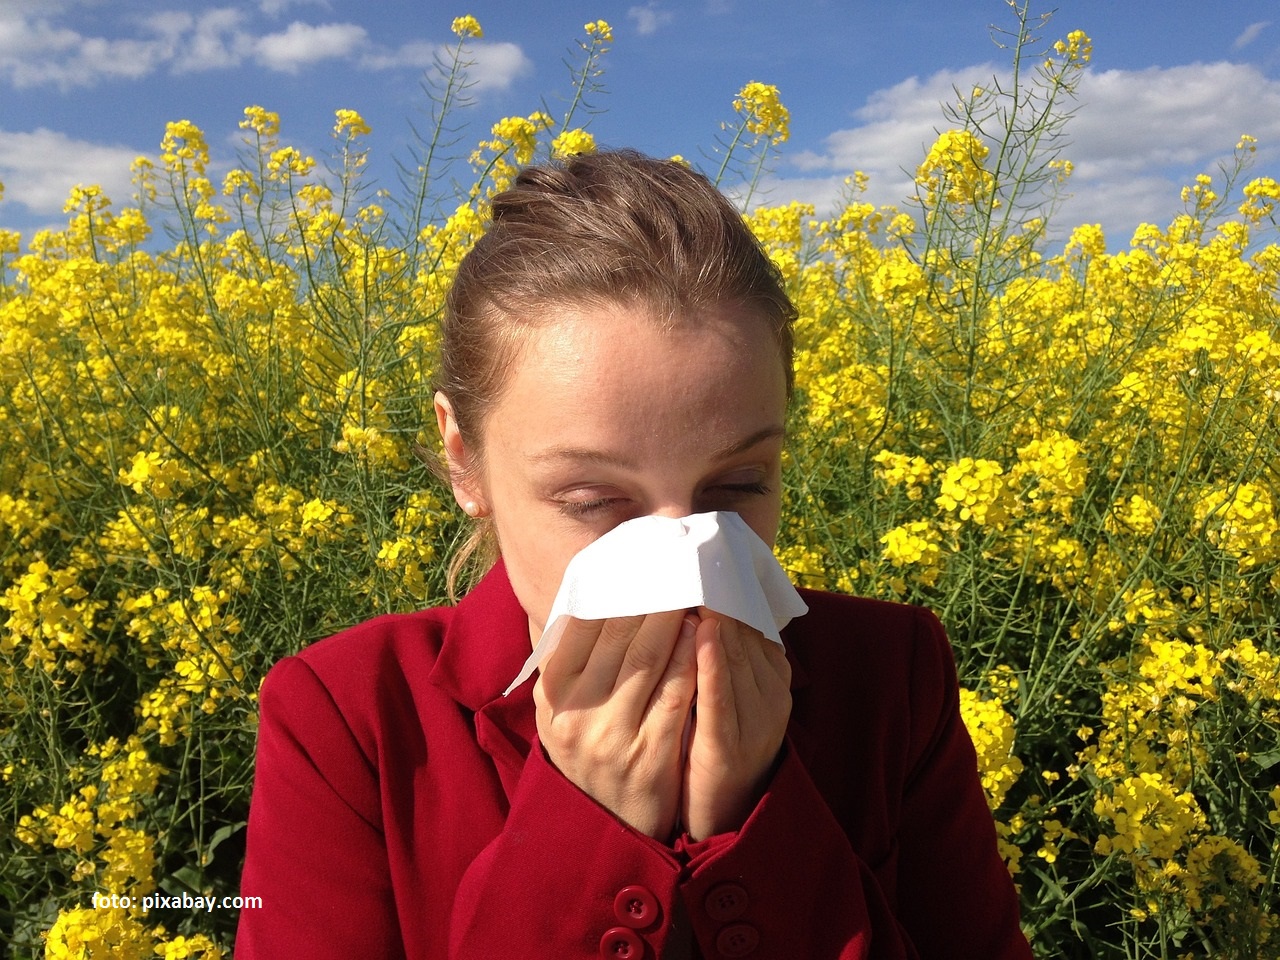 La miscelánea: Más de 8 millones de rumanos tienen alergia primaveral